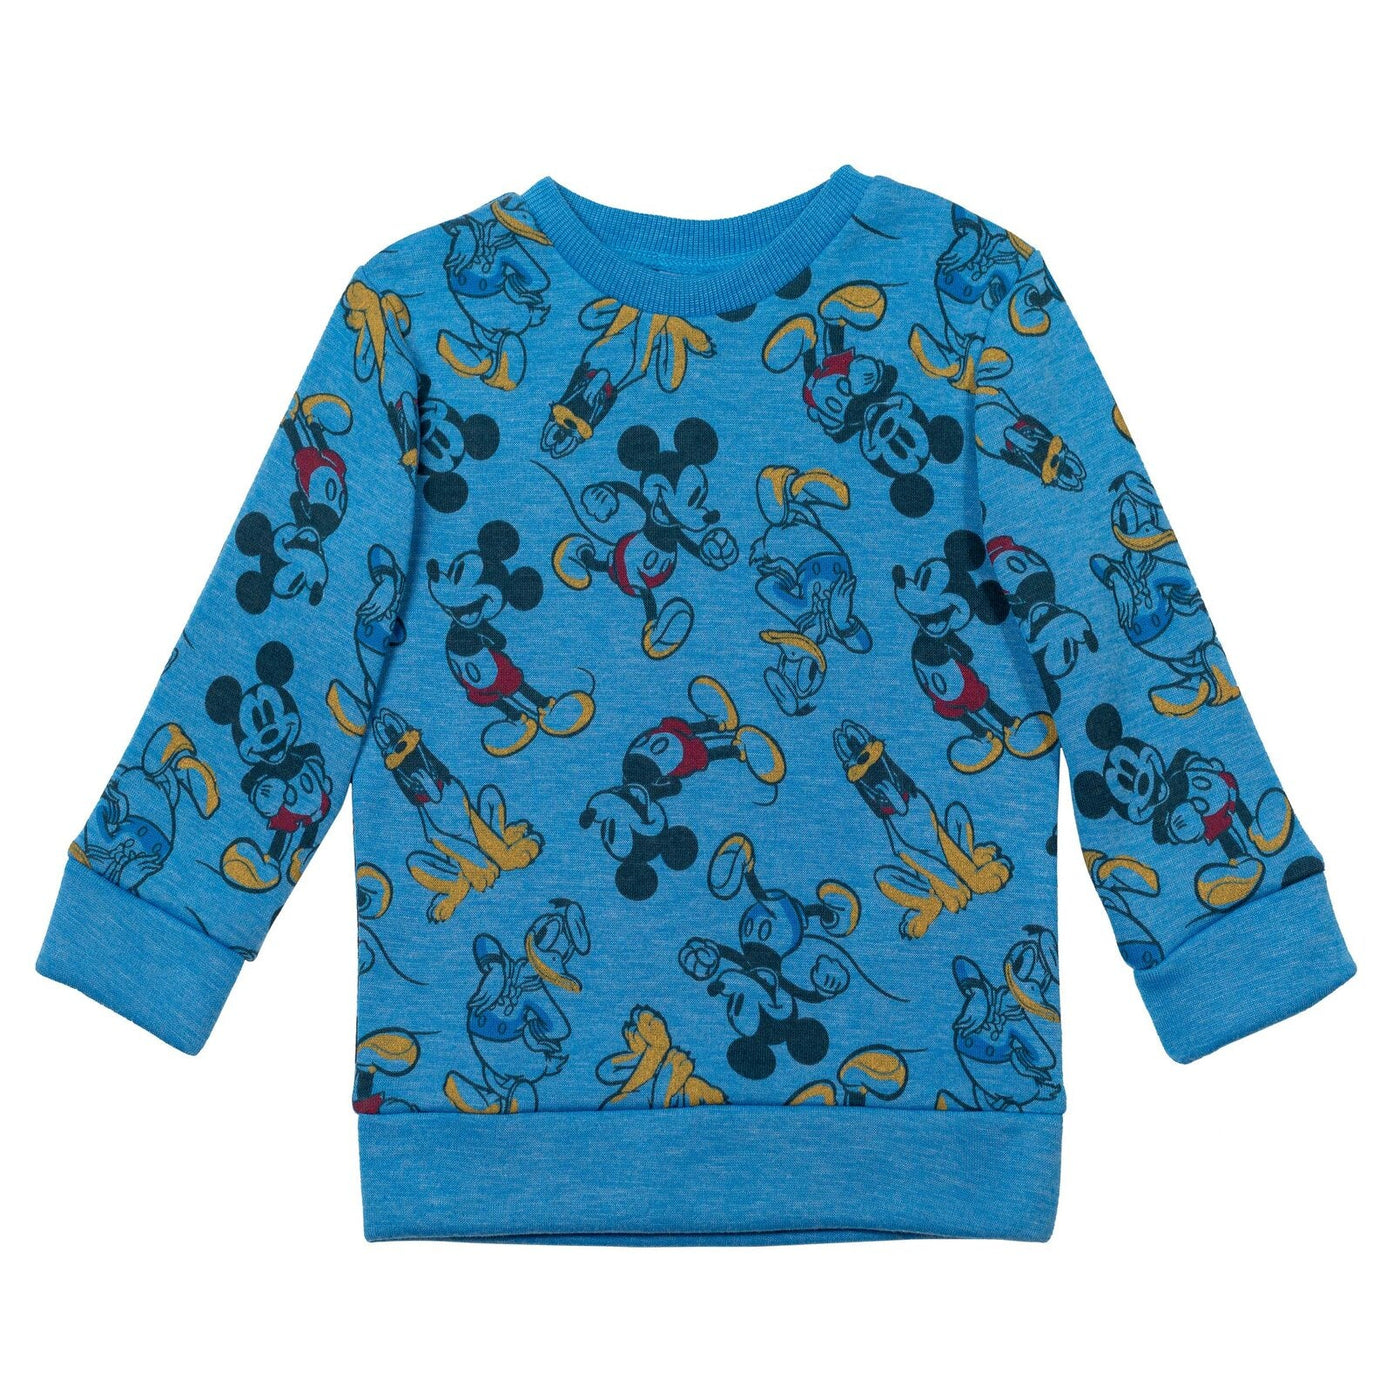 Disney Mickey Mouse Fleece Sweatshirt and Pants Set - imagikids